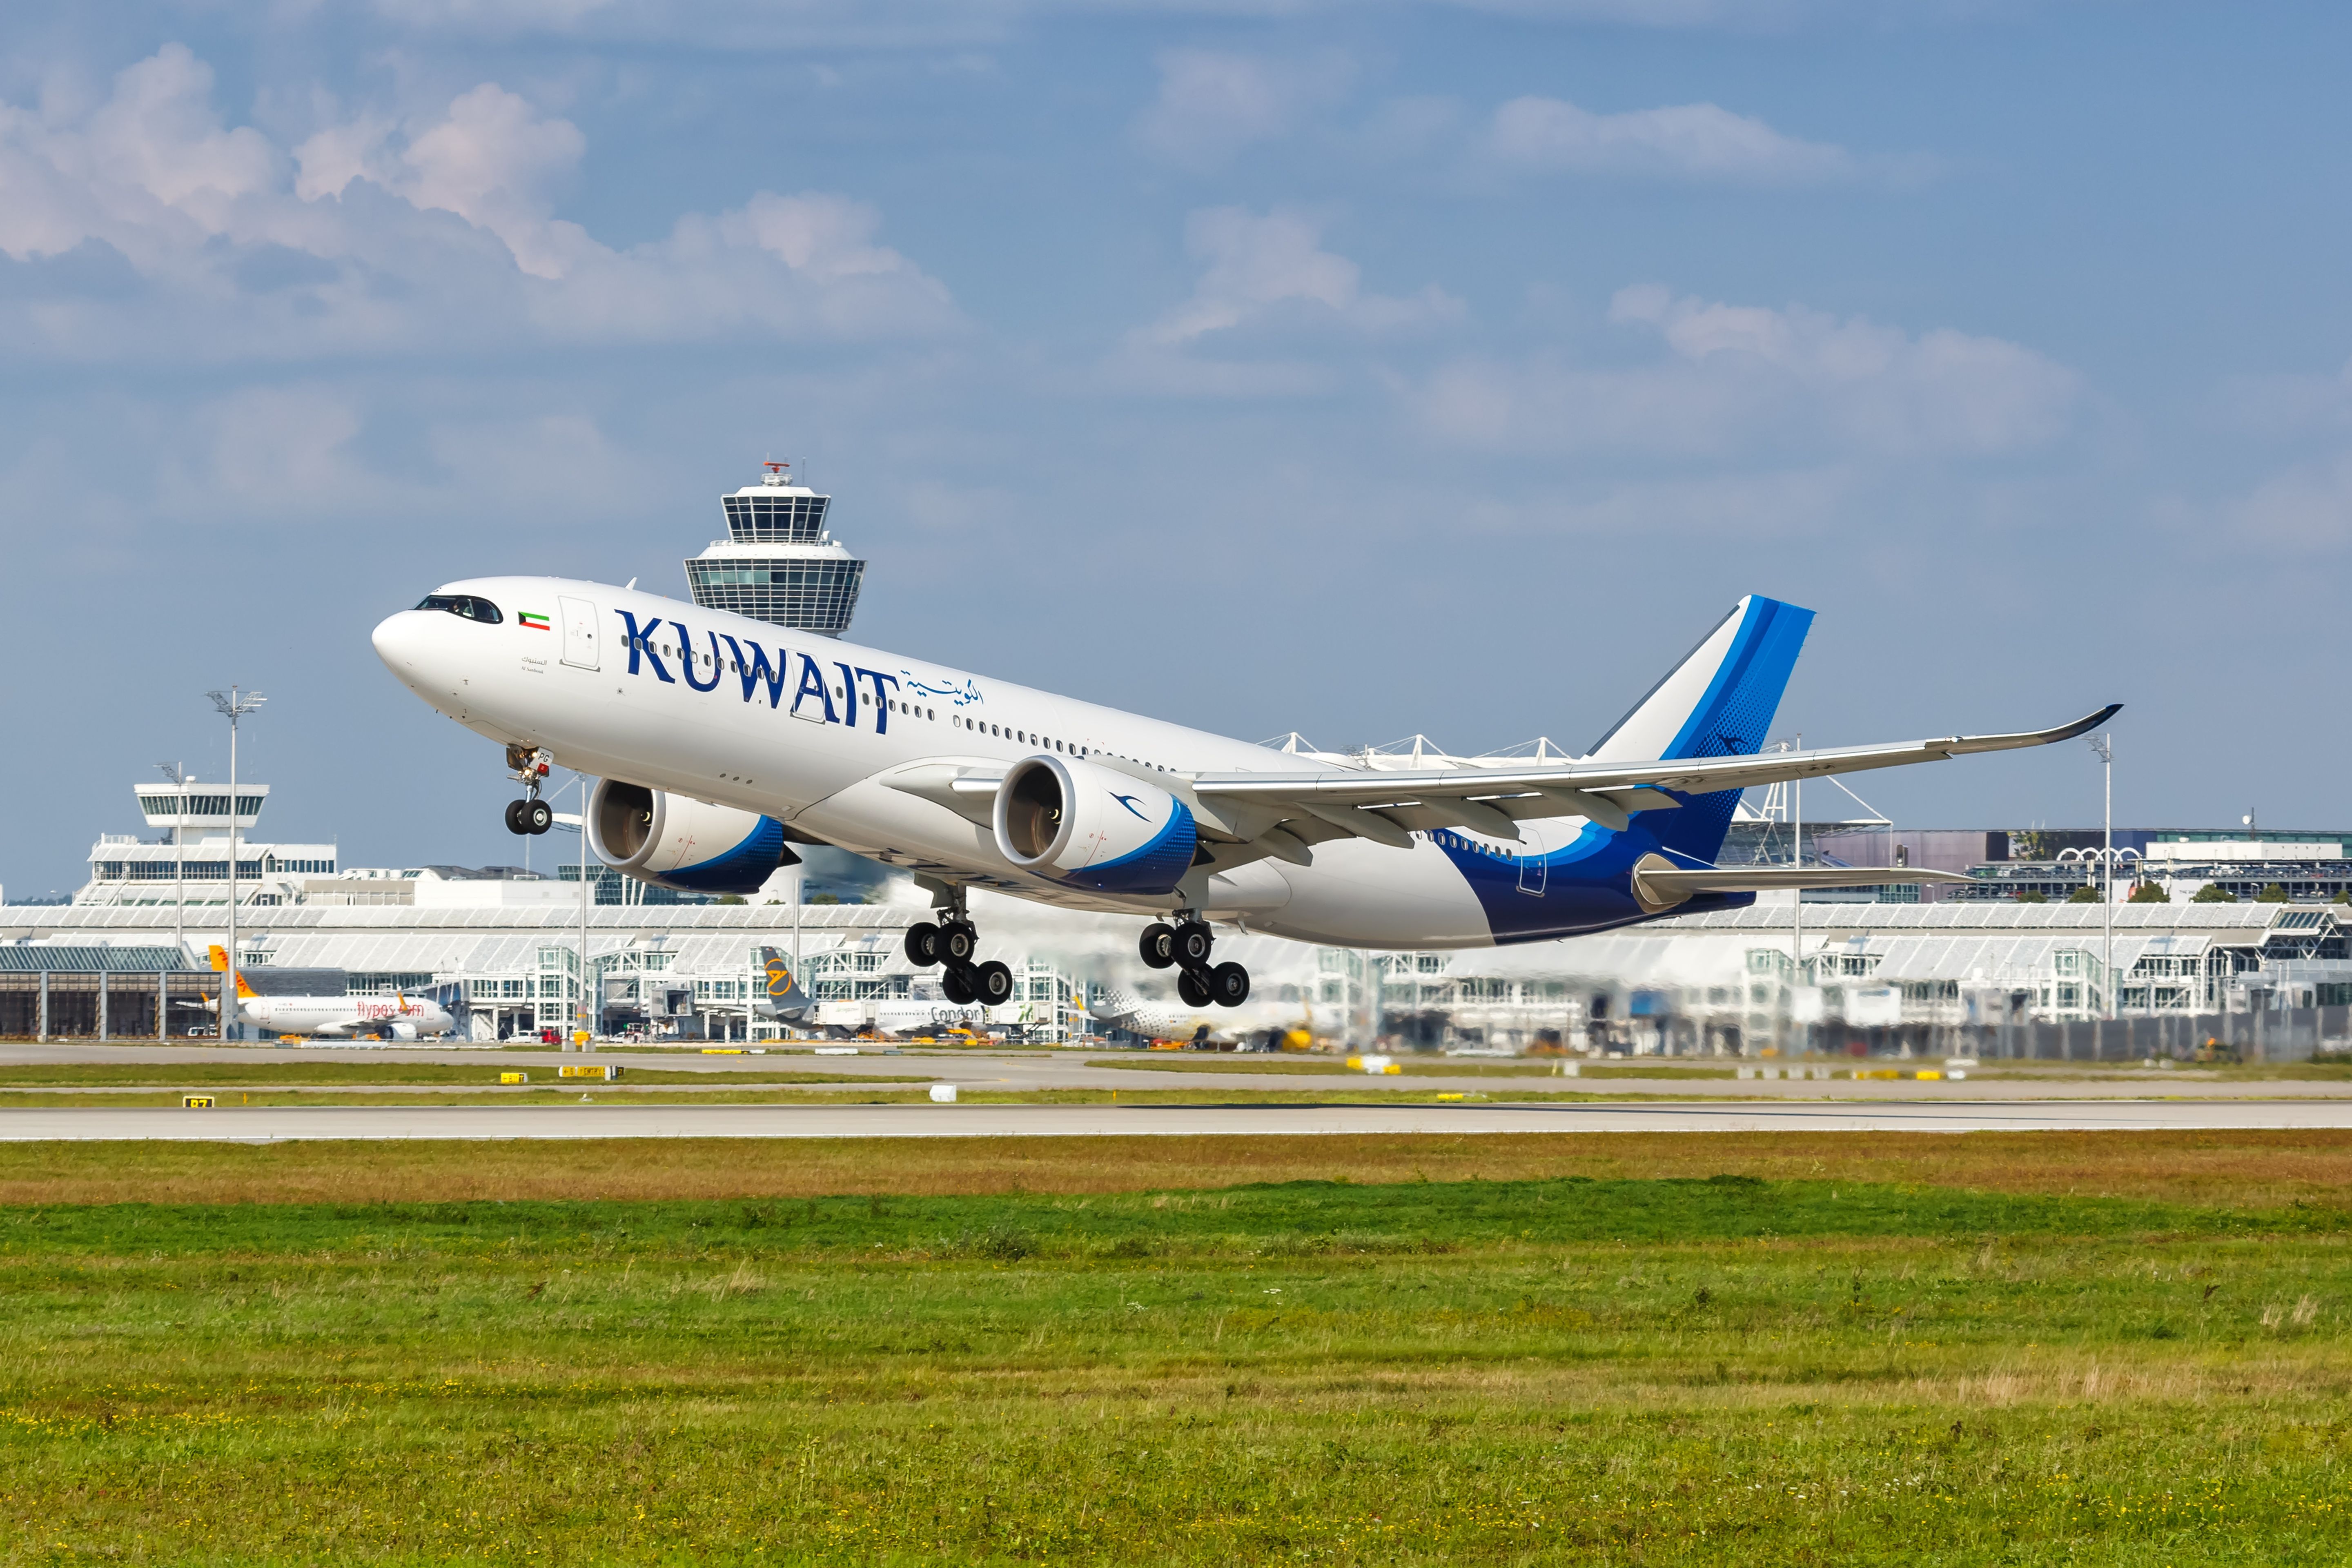 Kuwait Airways Airbus A330-800neo airplane at Munich airport (MUC)